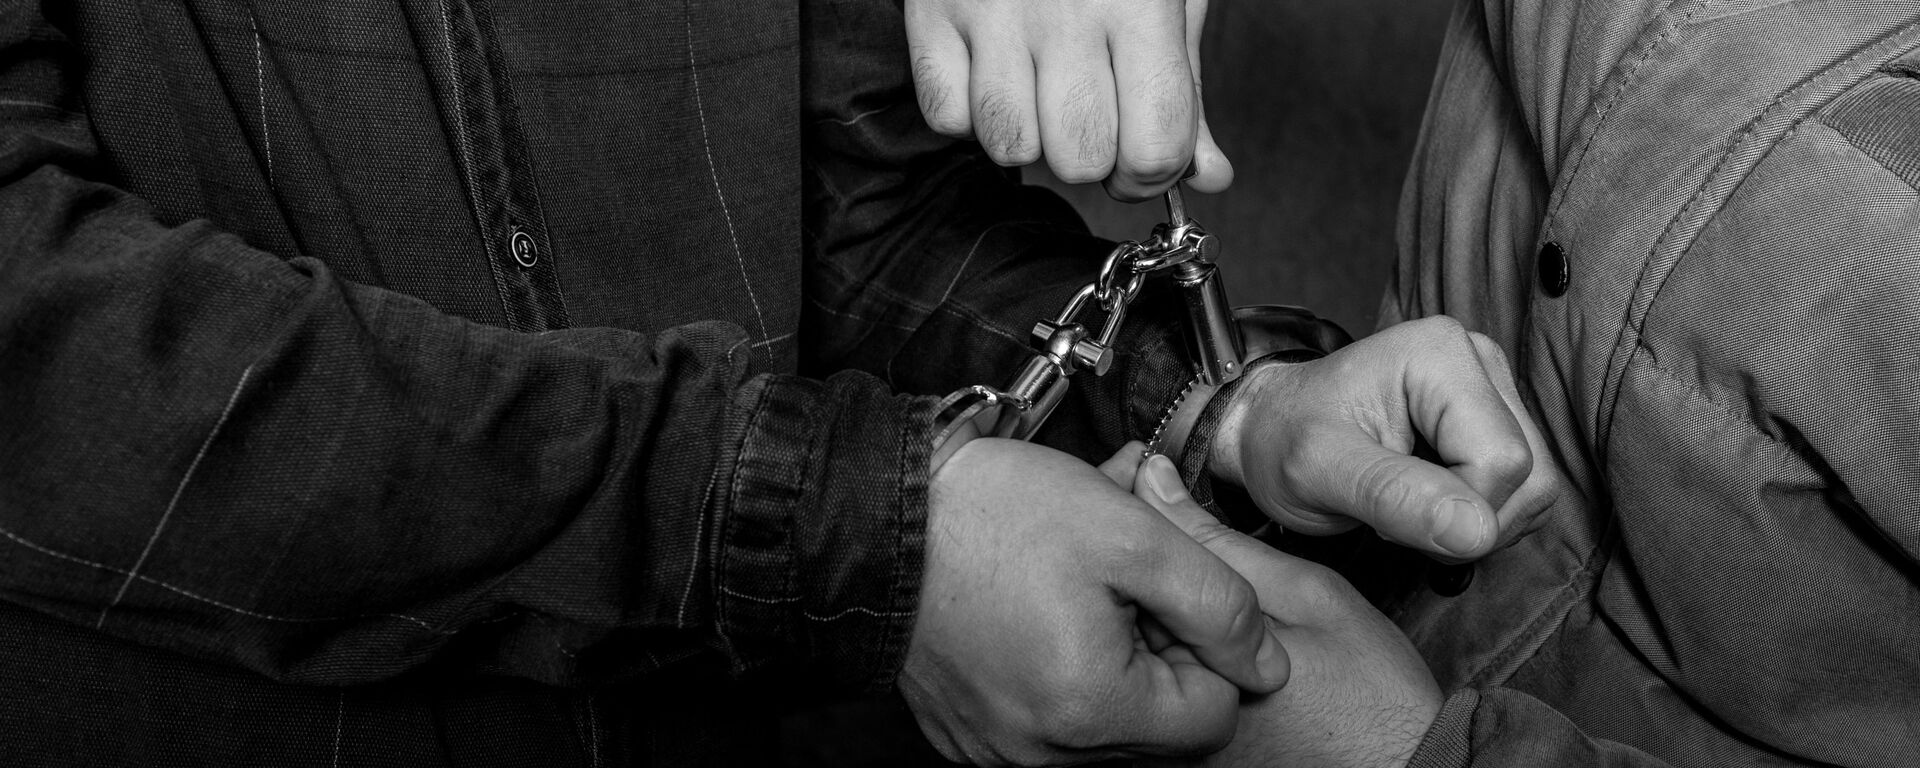 Задержание преступника - наручники надевают на руки - Sputnik Грузия, 1920, 12.03.2021